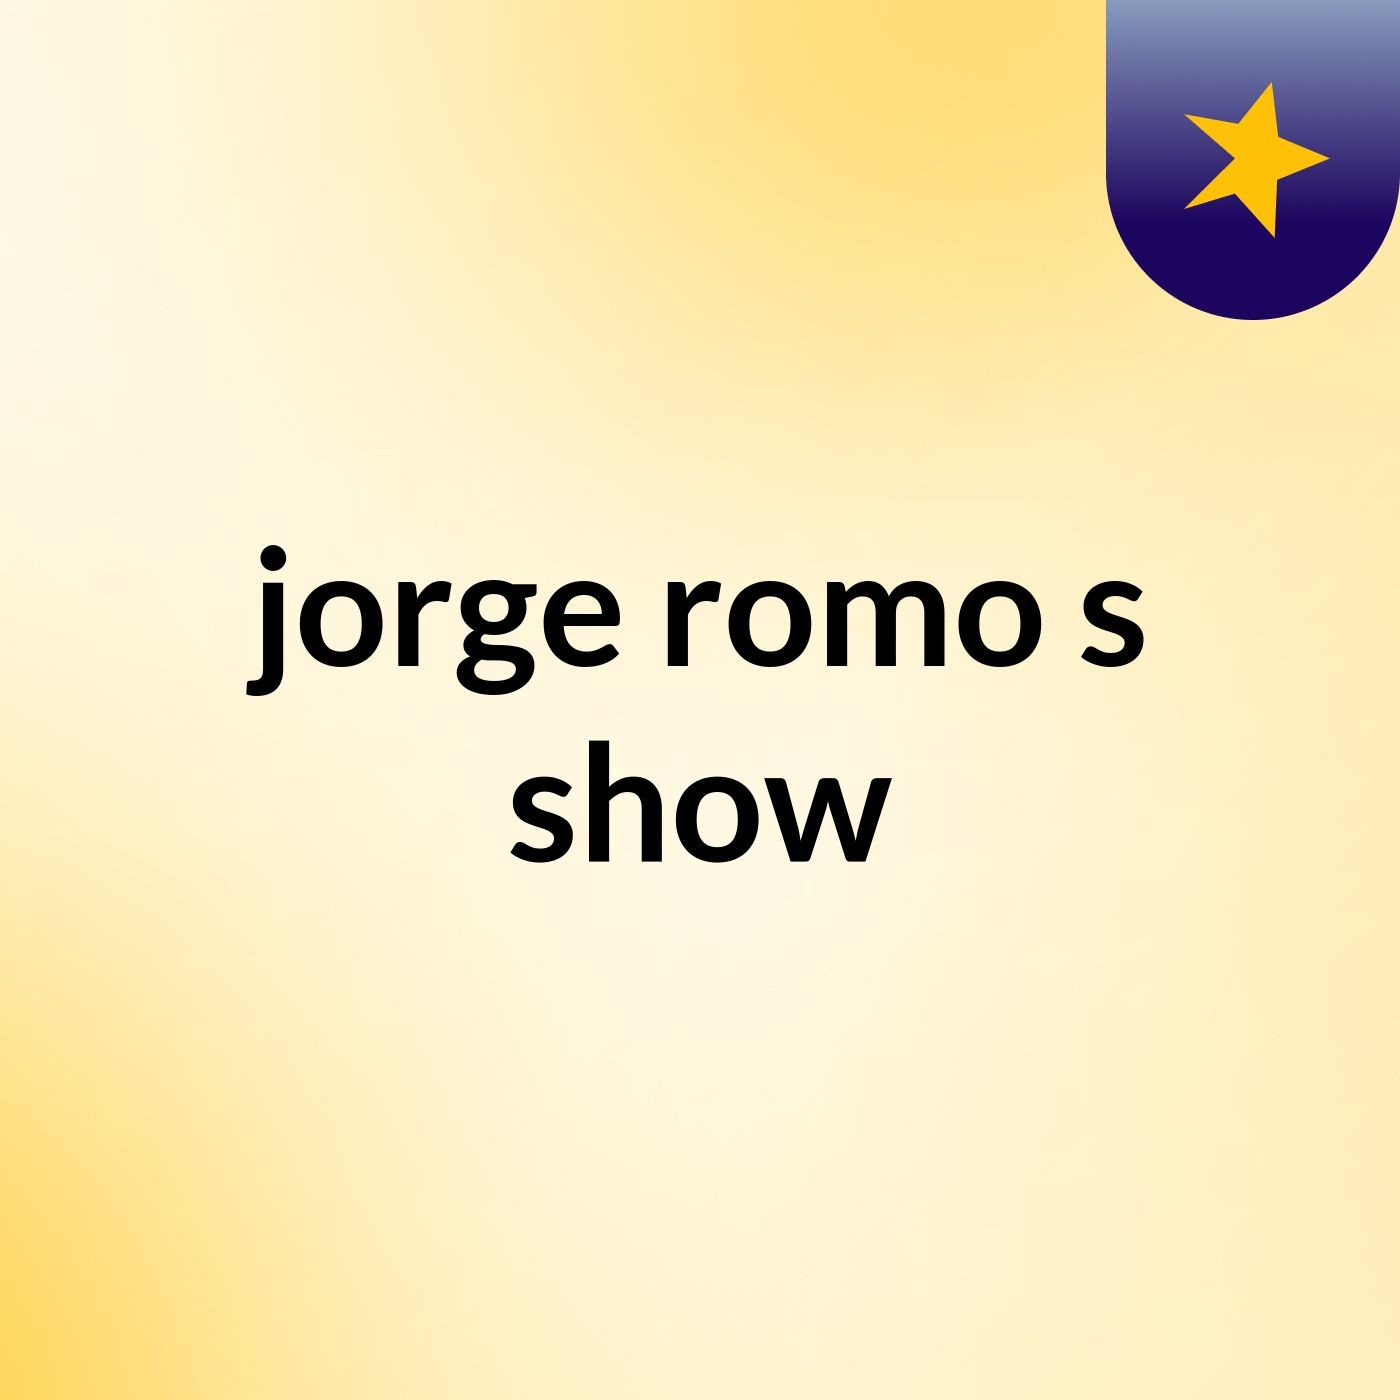 jorge romo's show